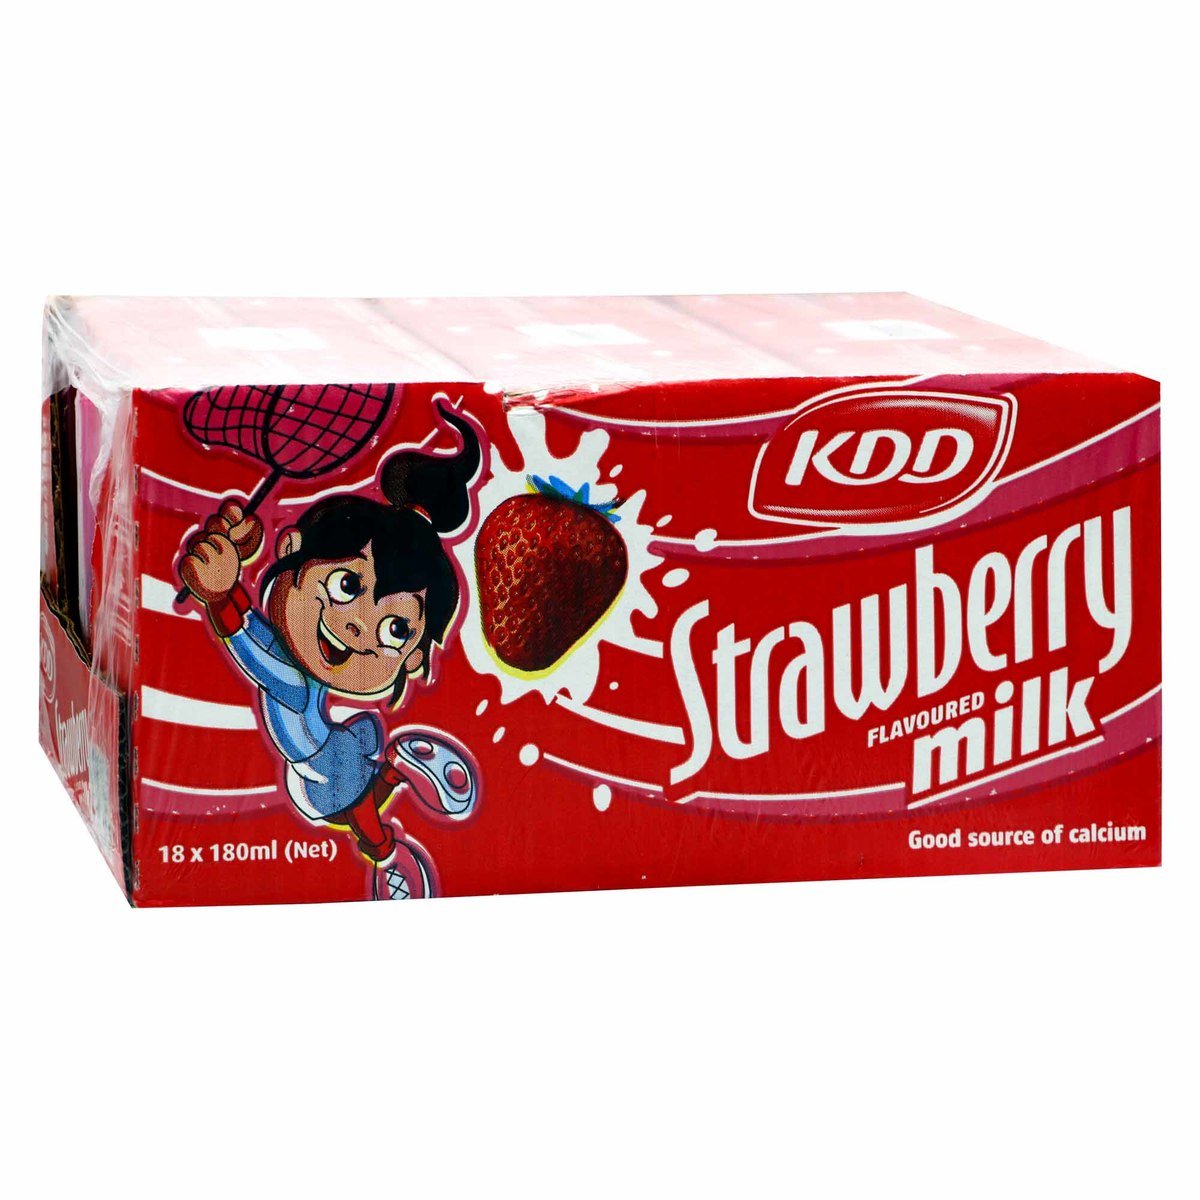 KDD Strawberry Flavoured  Milk 6 x 180ml